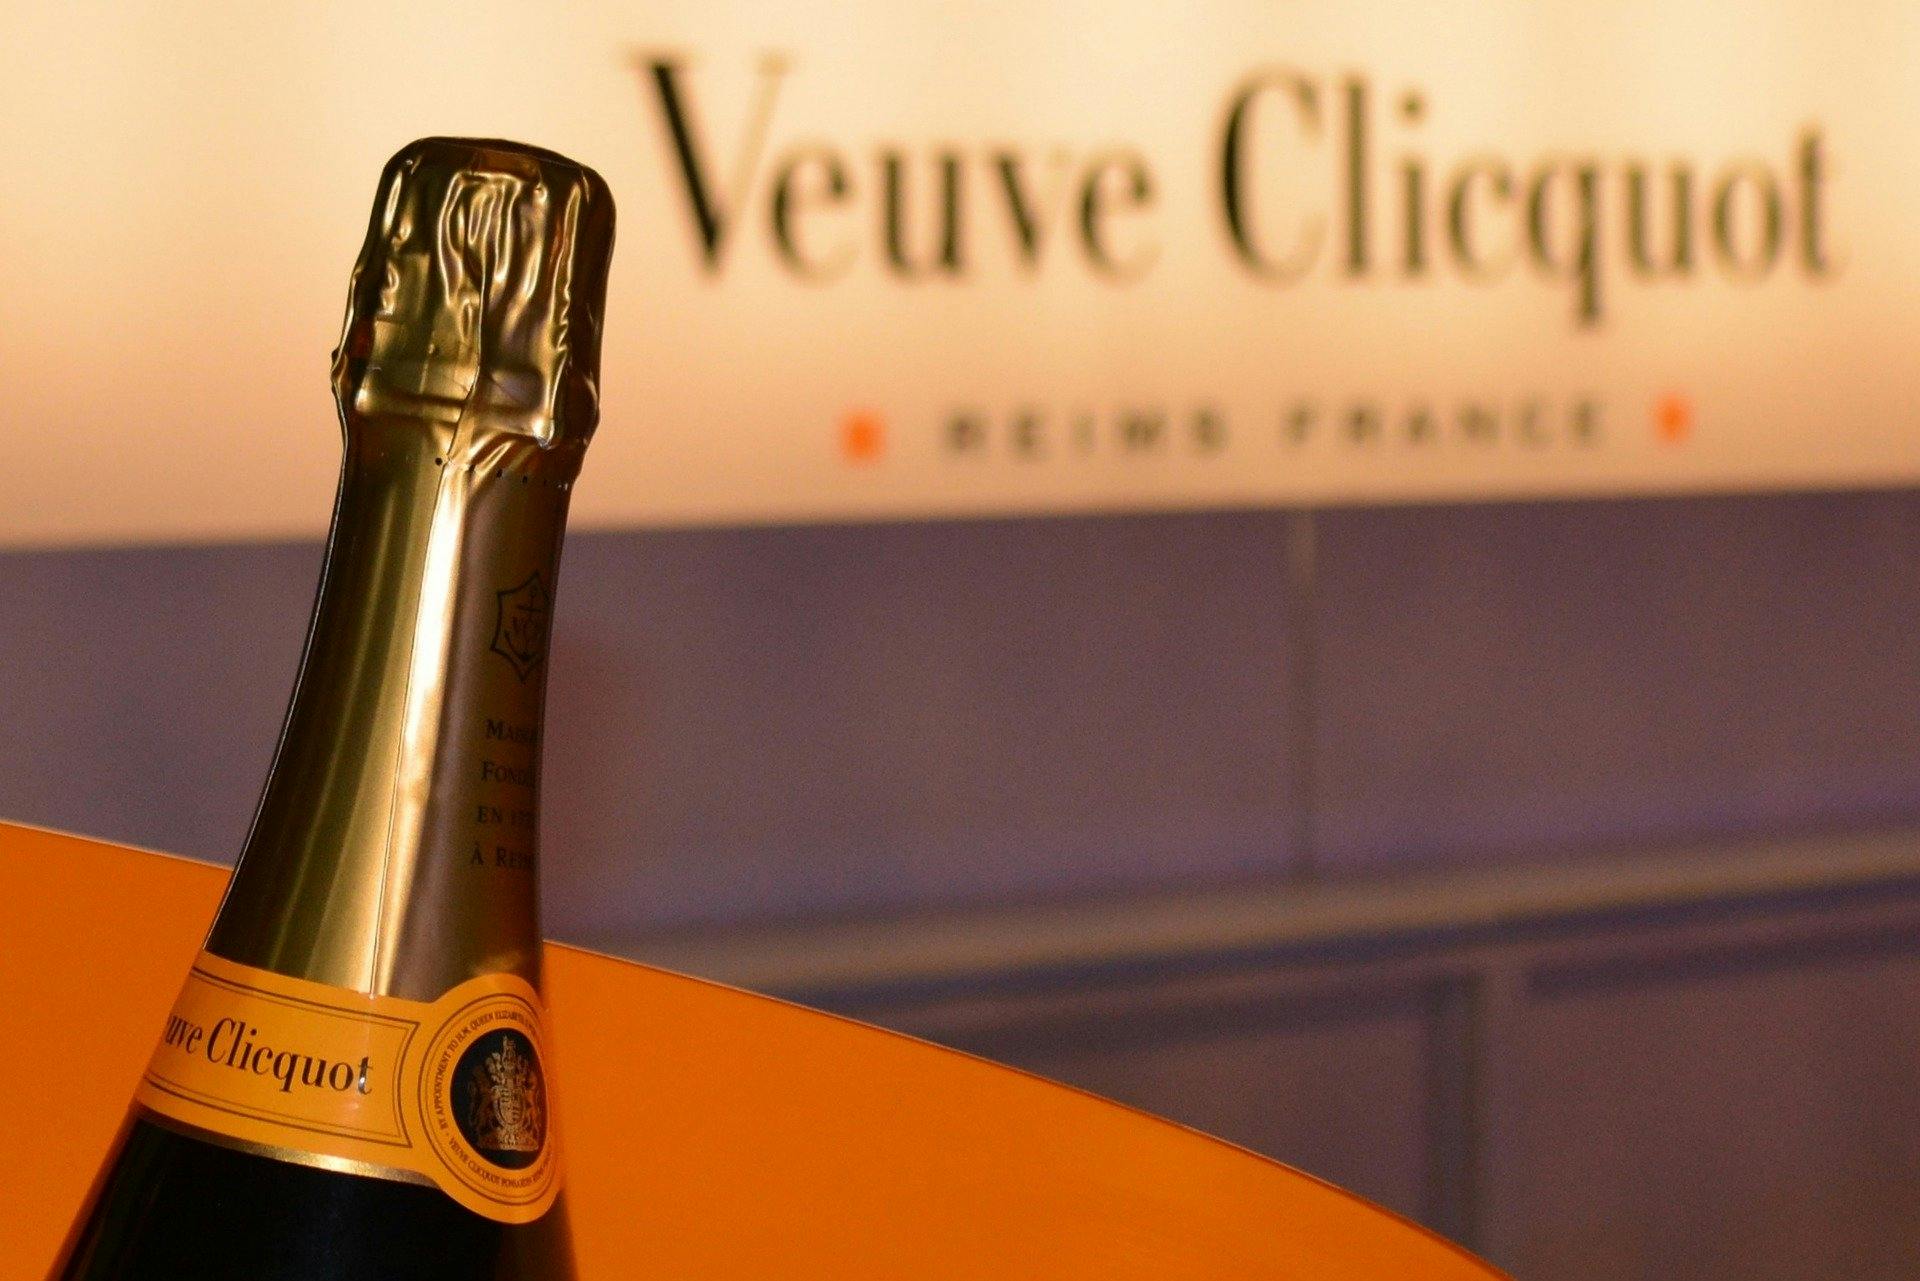 Volledige dagtour en proeverij Veuve Clicquot en lokale wijnmakerij met lunch